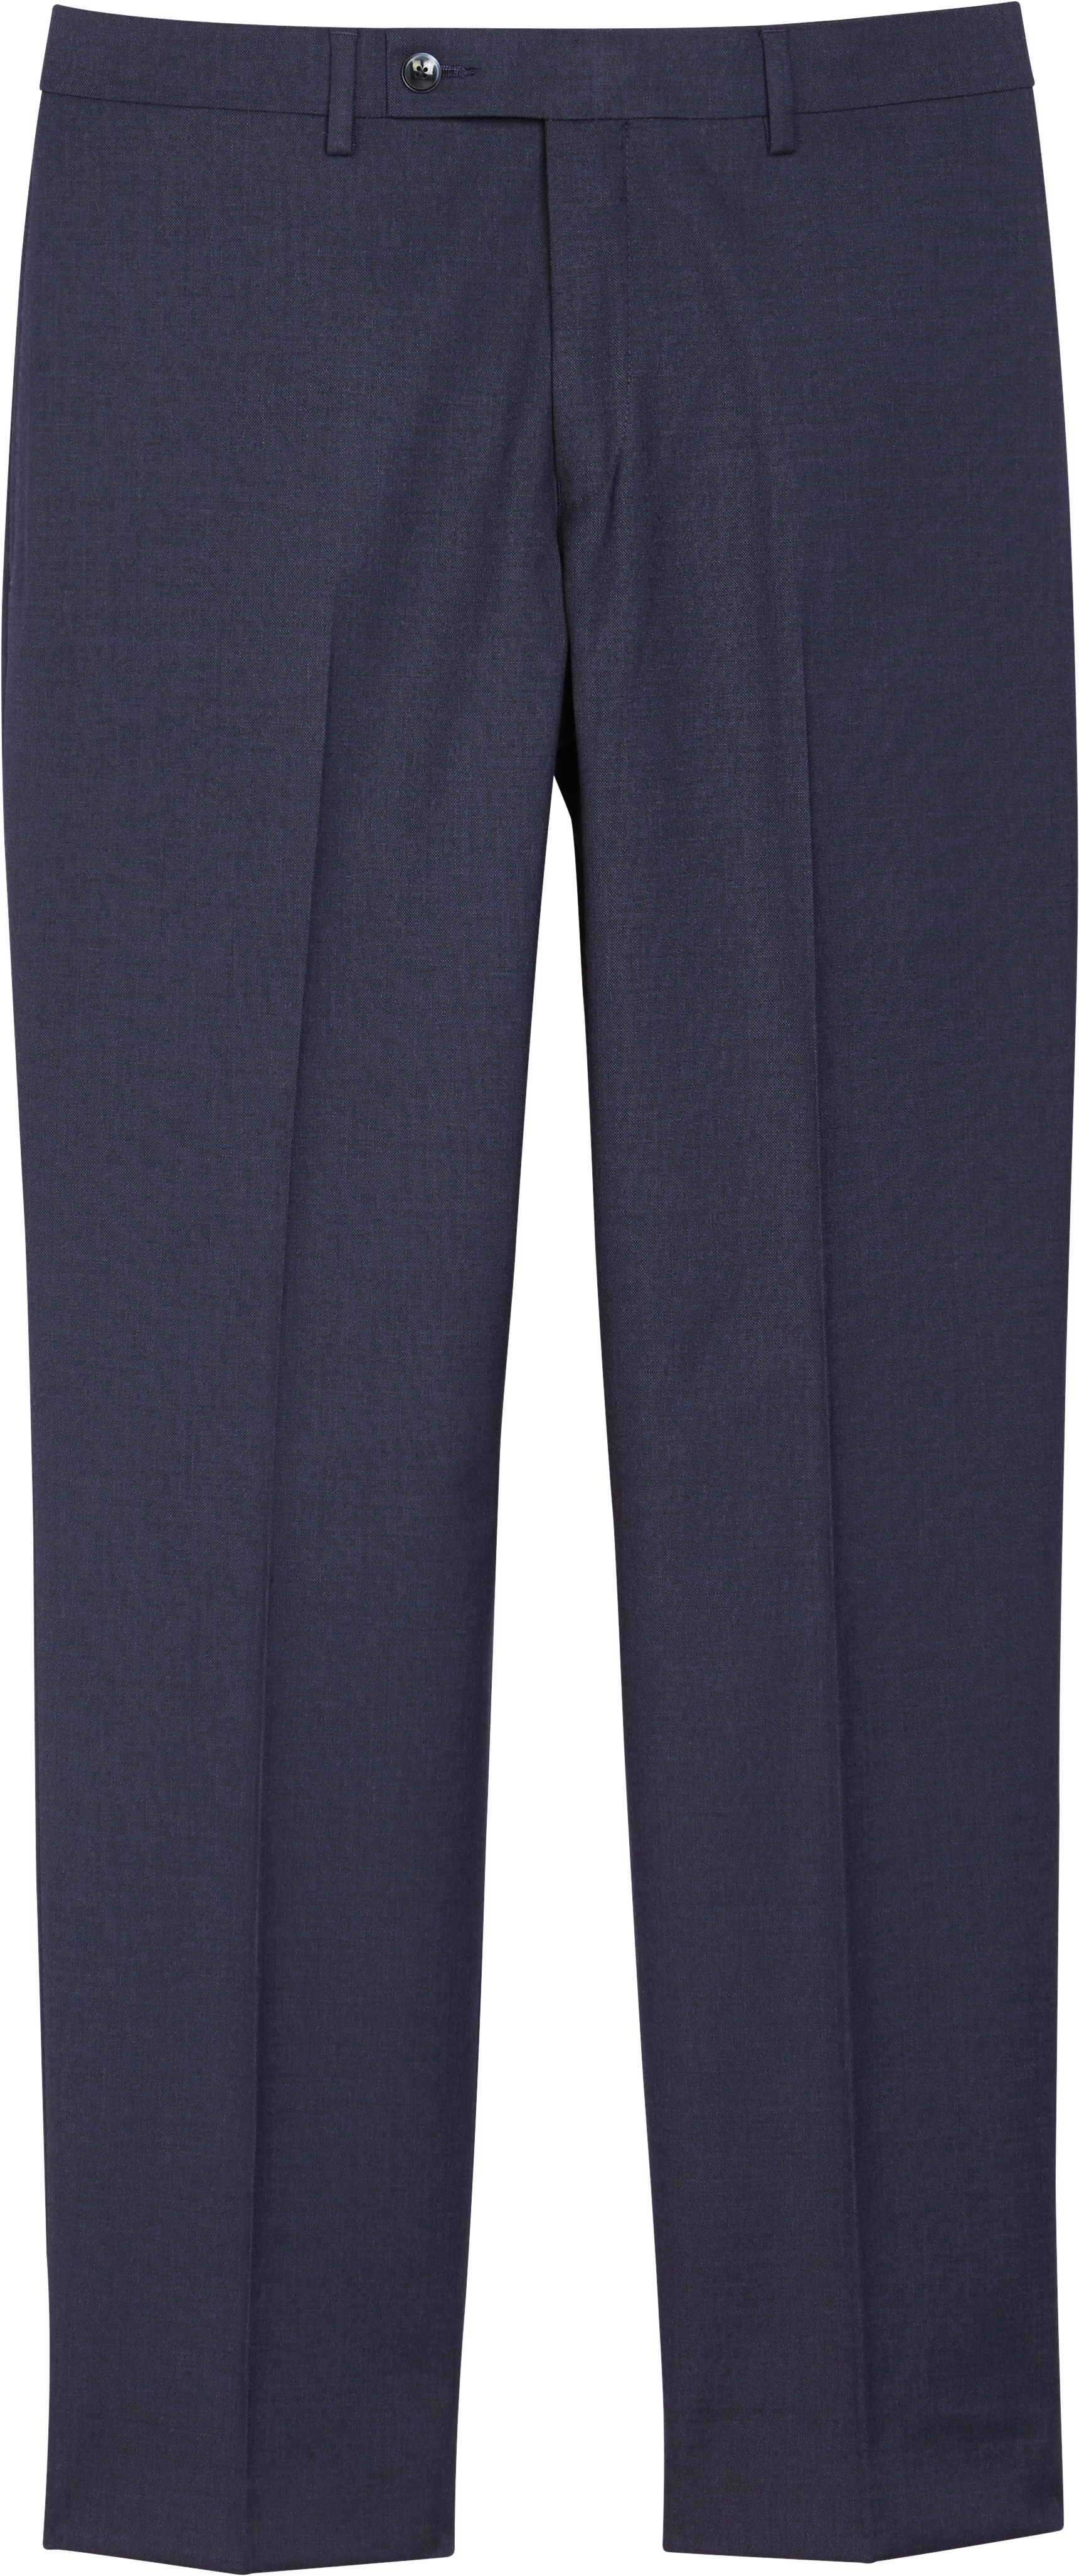 Van Heusen Navy Sharkskin Cool Flex Suit Separates Pants - Men's Sale ...